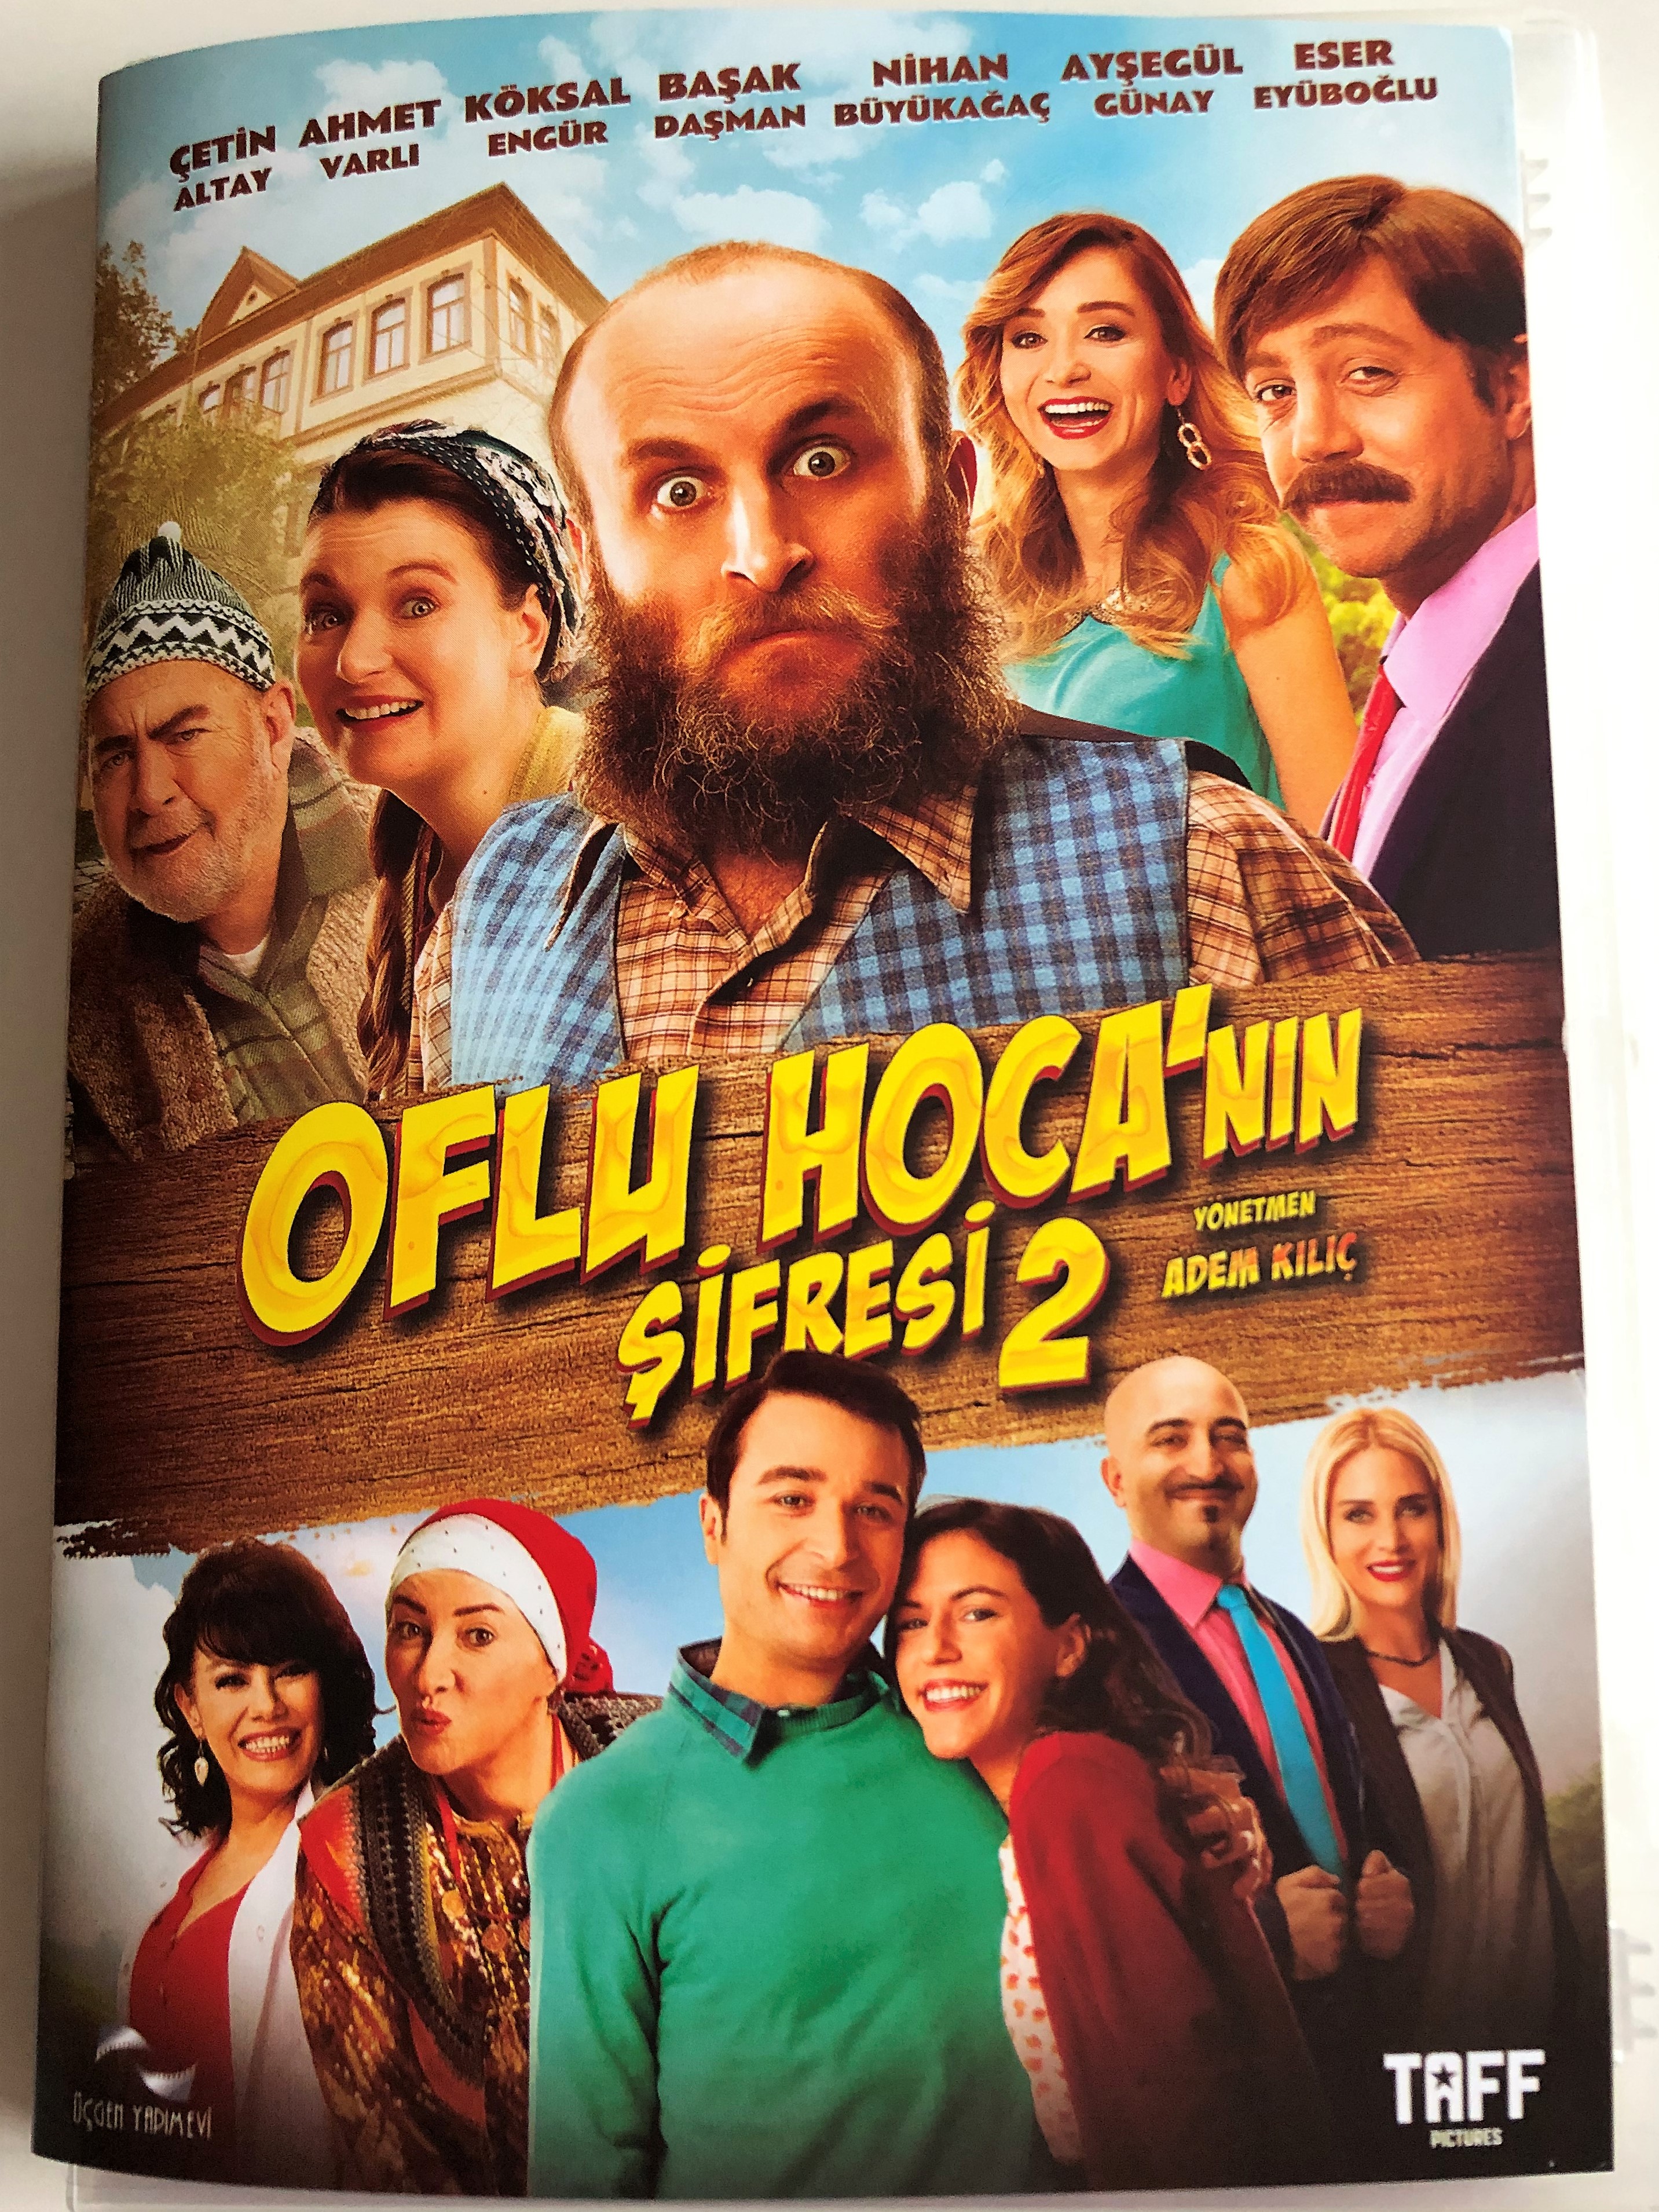 oflu-hoca-n-n-ifresi-2-dvd-2016-oflu-hoja-s-codename-directed-by-adem-kili-starring-etin-altay-ahmet-varl-k-ksal-eng-r-1-.jpg